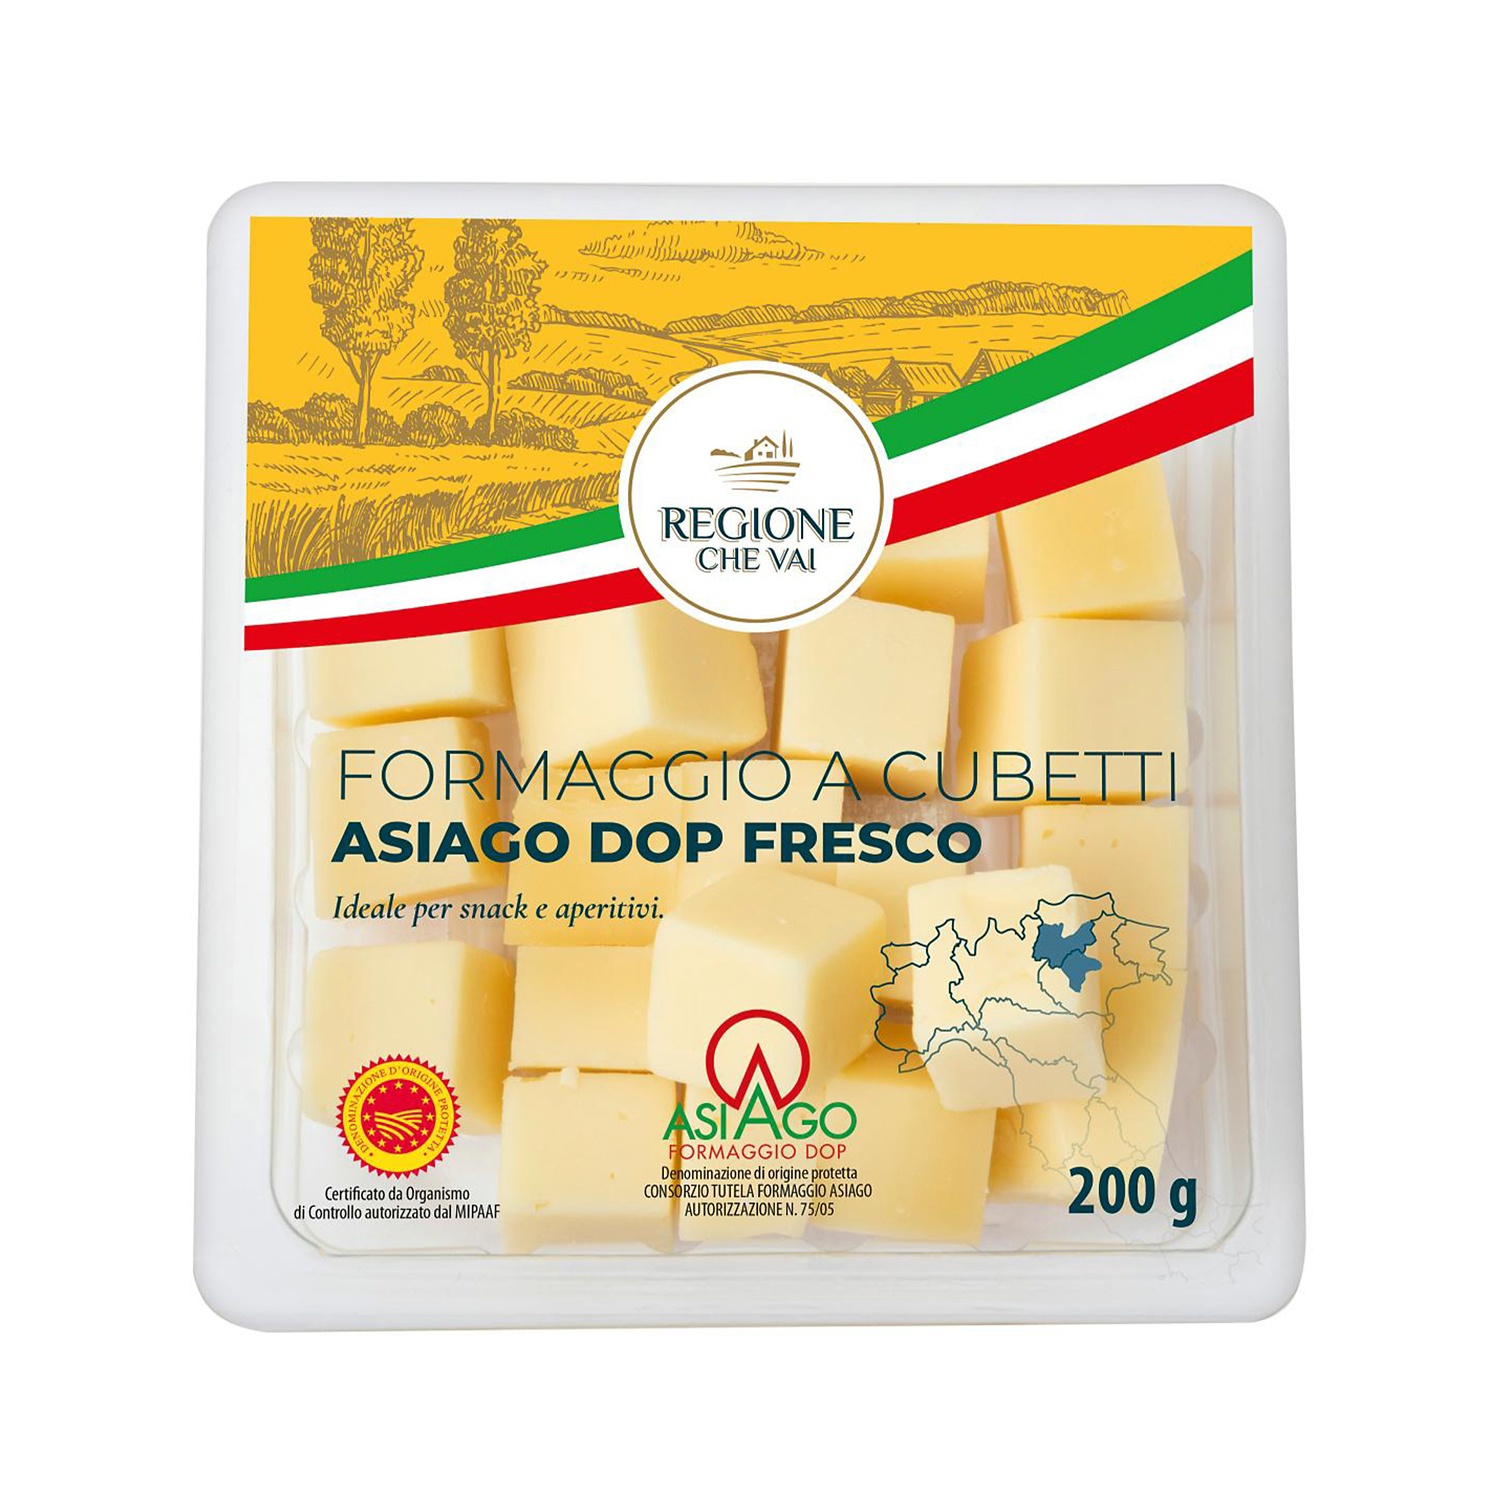 REGIONE CHE VAI Cubetti di formaggio, Asiago DOP